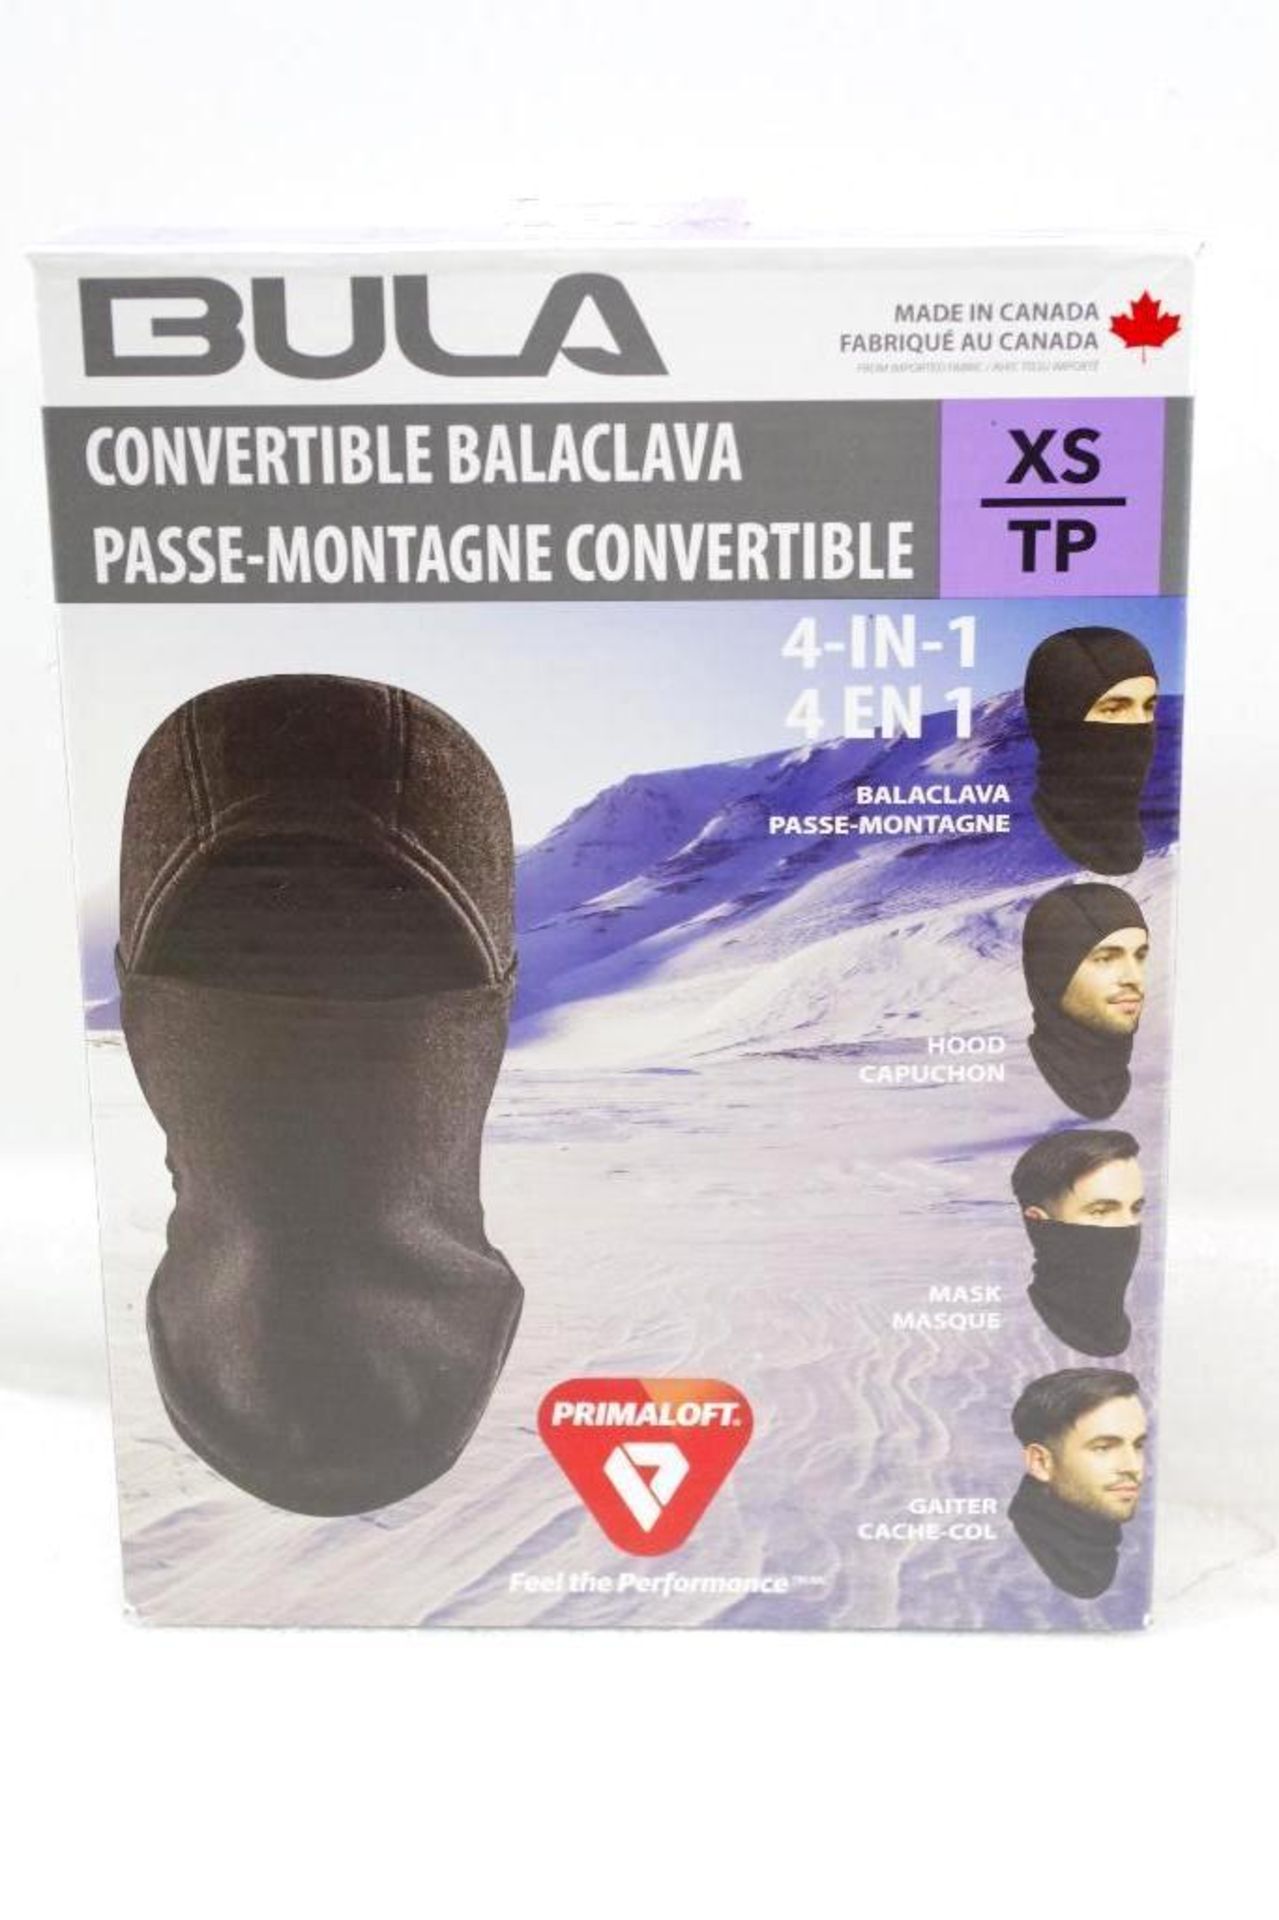 BULA Convertible Balaclava Size: XS